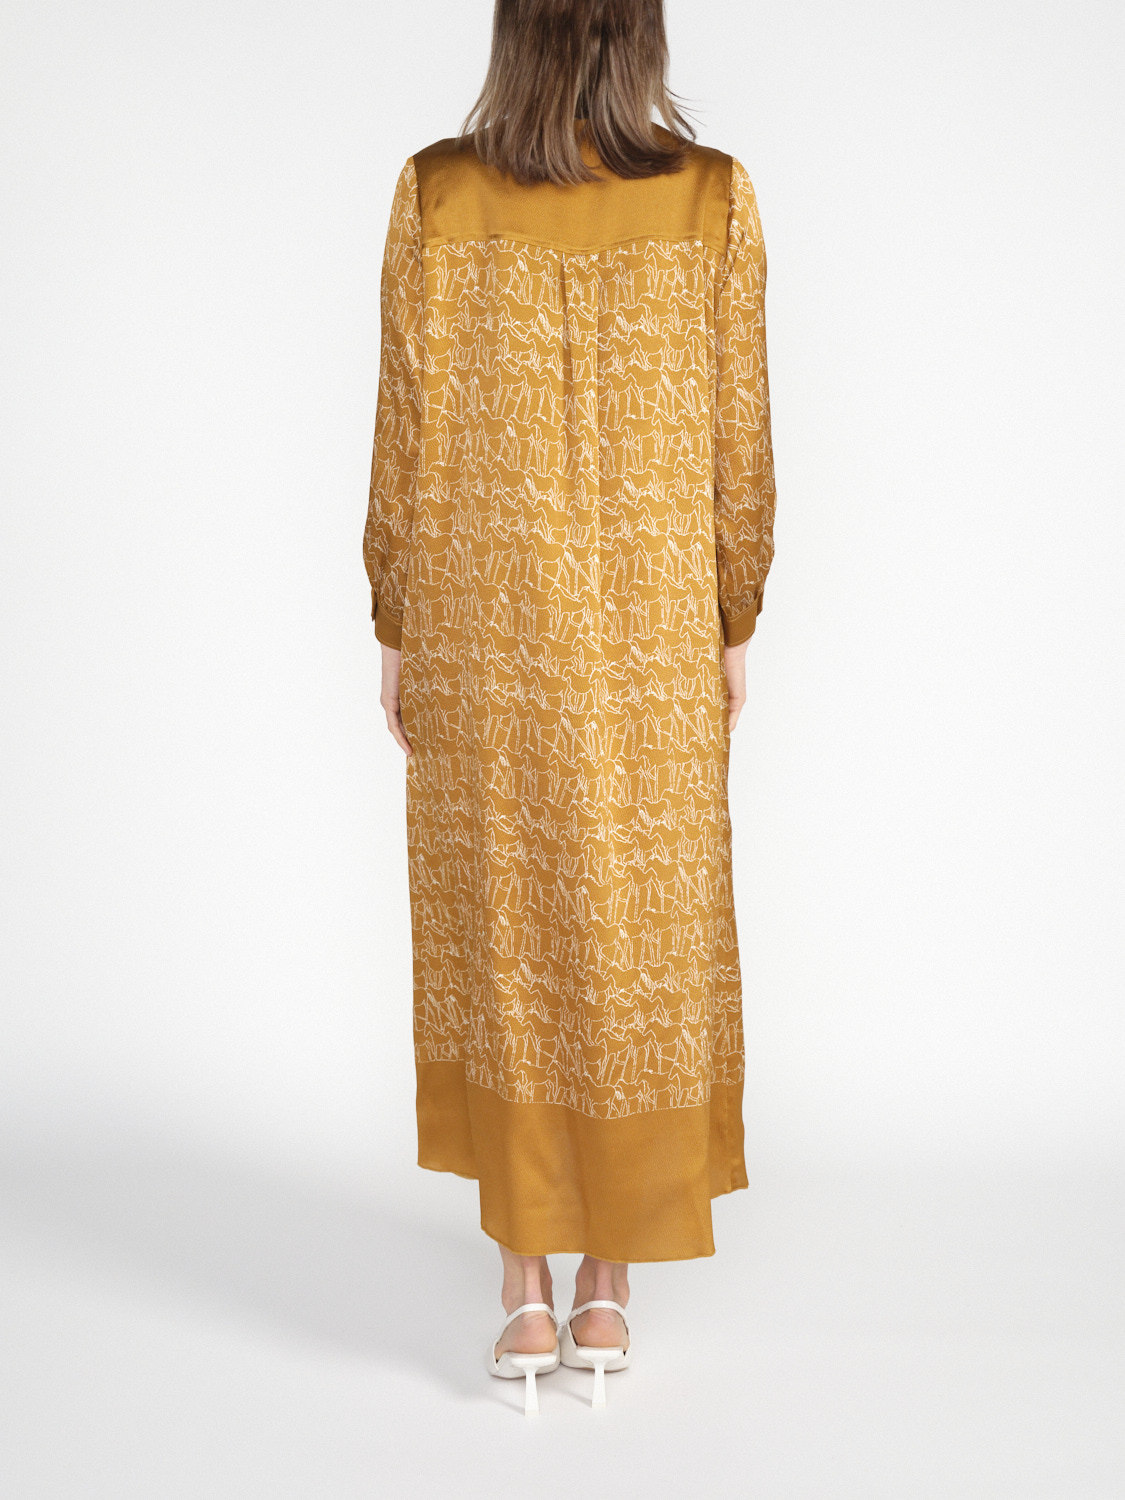 Antonia Zander Calima – Kleid mit grafischen Pferden Print  camel S